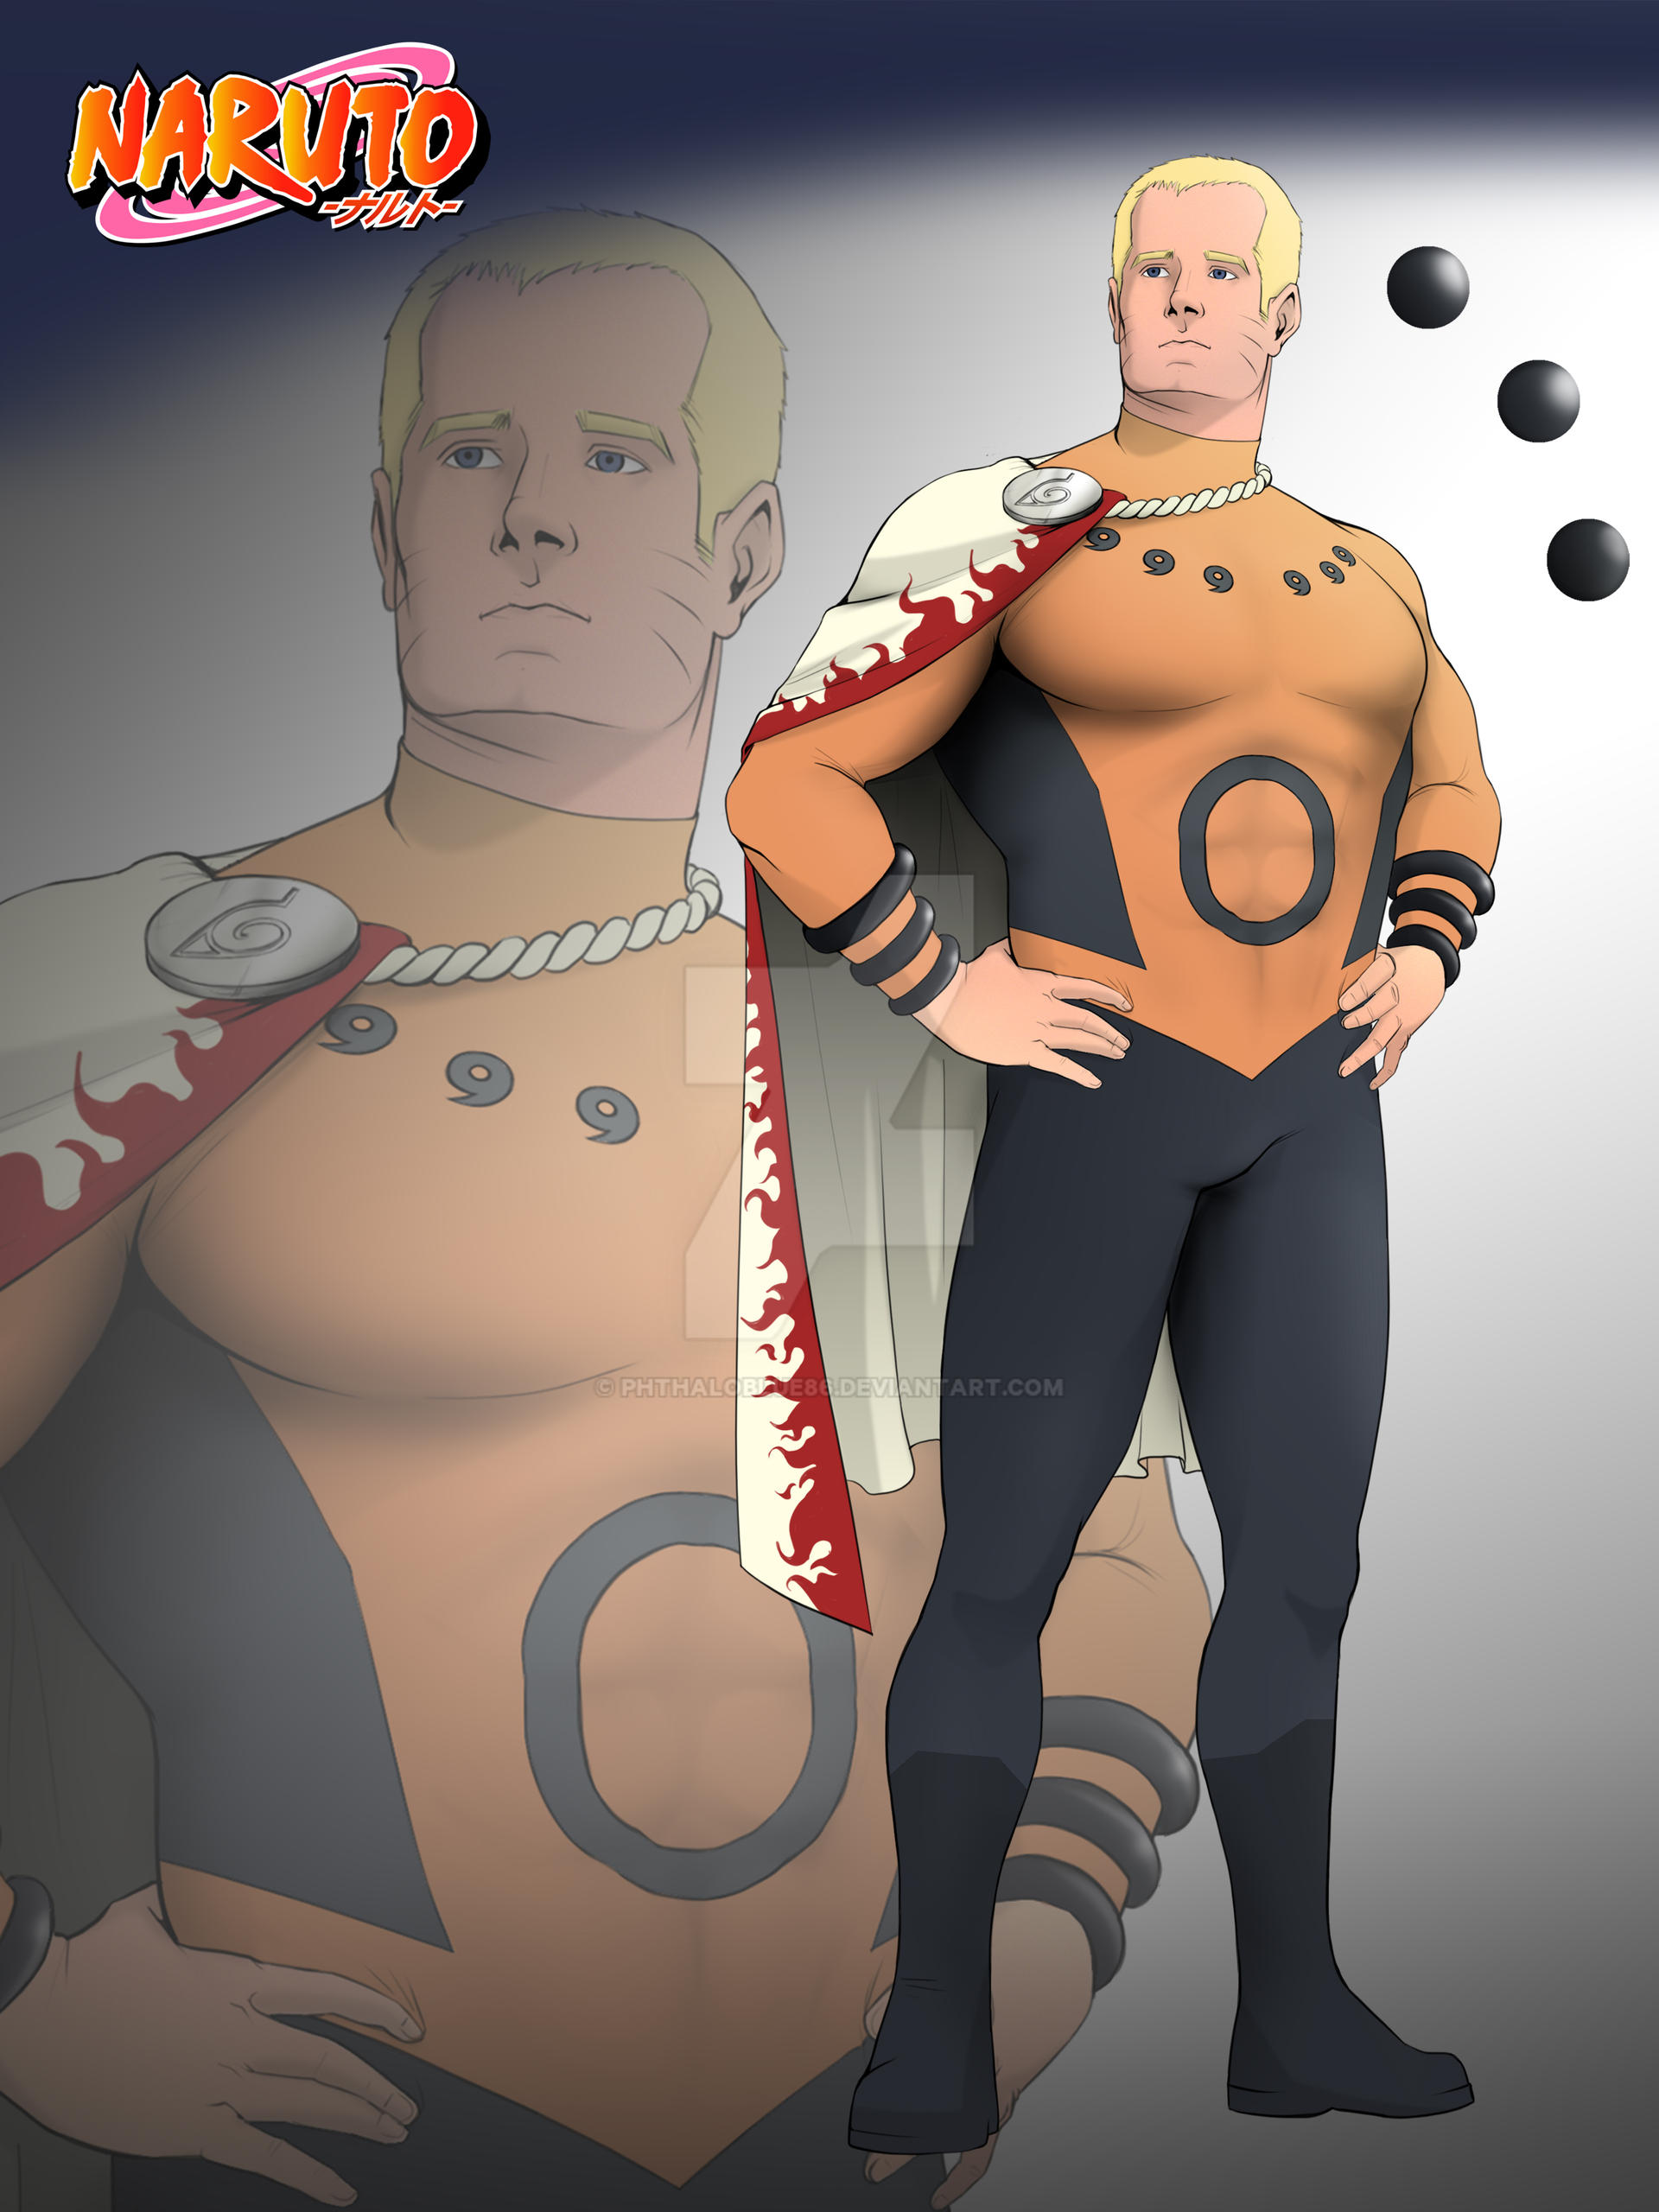 Naruto Super Hero